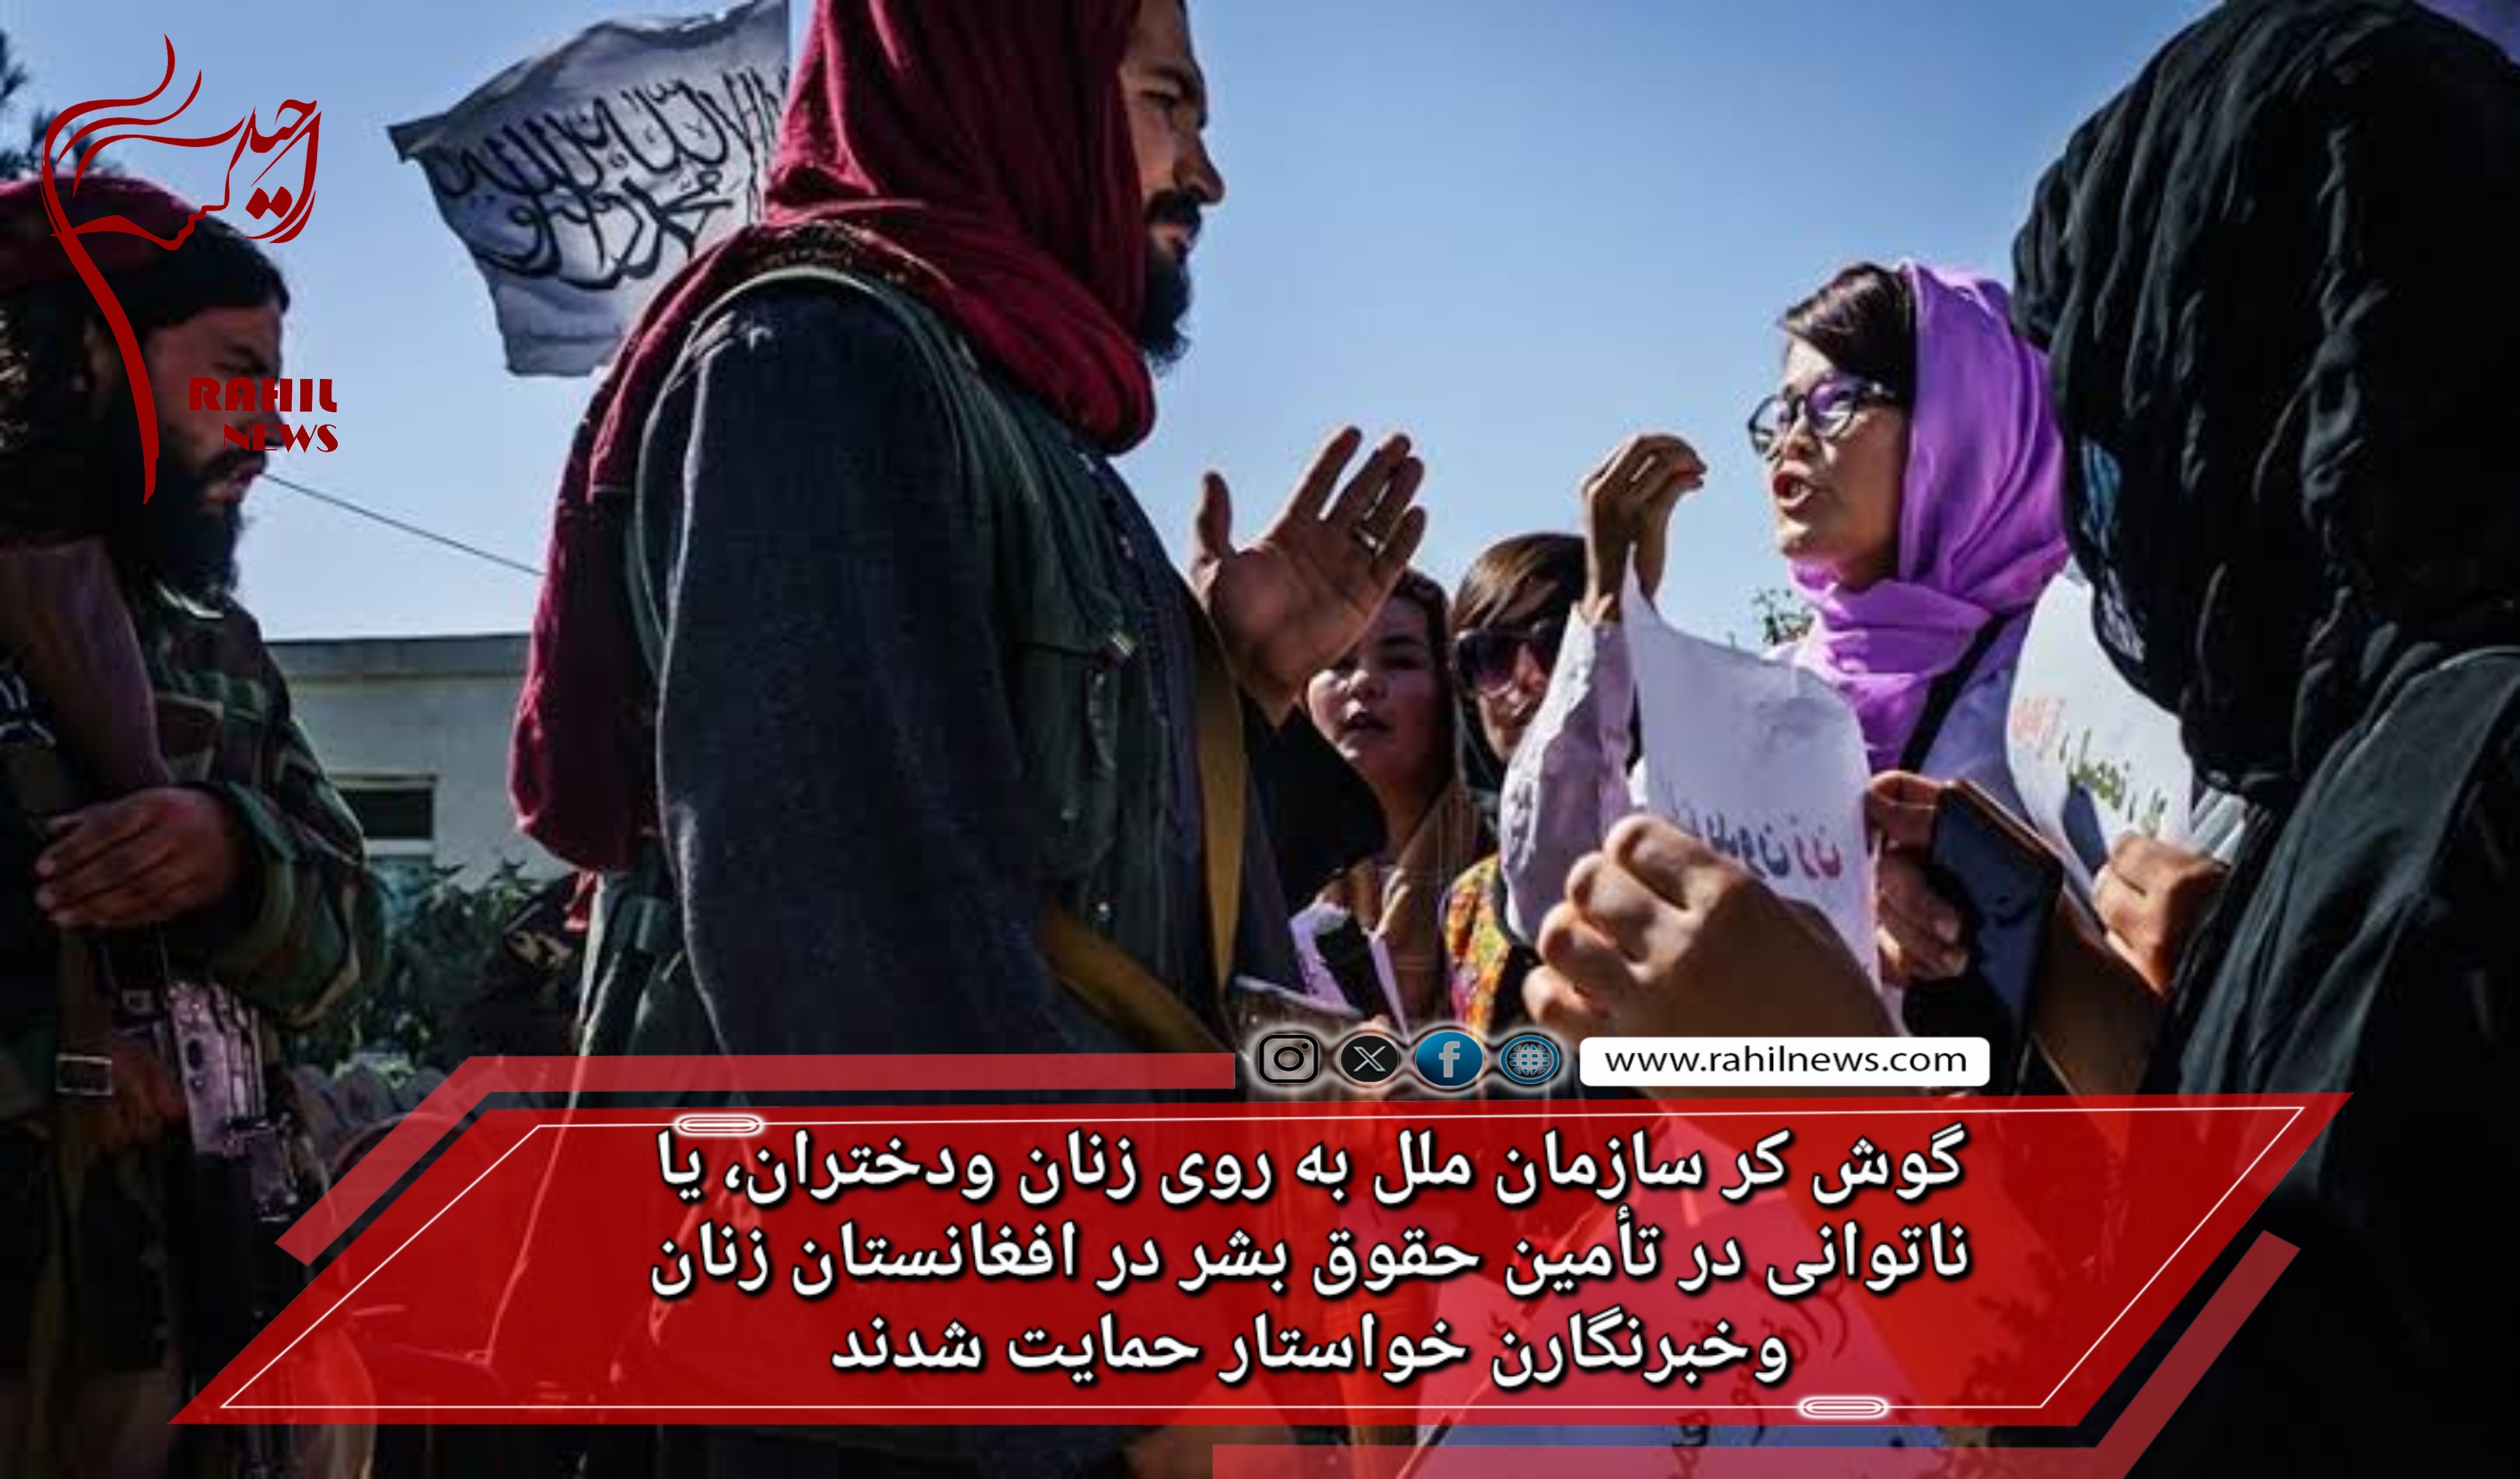 گوش کر سازمان ملل به روی زنان ودختران، یا ناتوانی در تأمین حقوق بشر در افغانستان زنان وخبرنگارن خواستار حمایت شدند